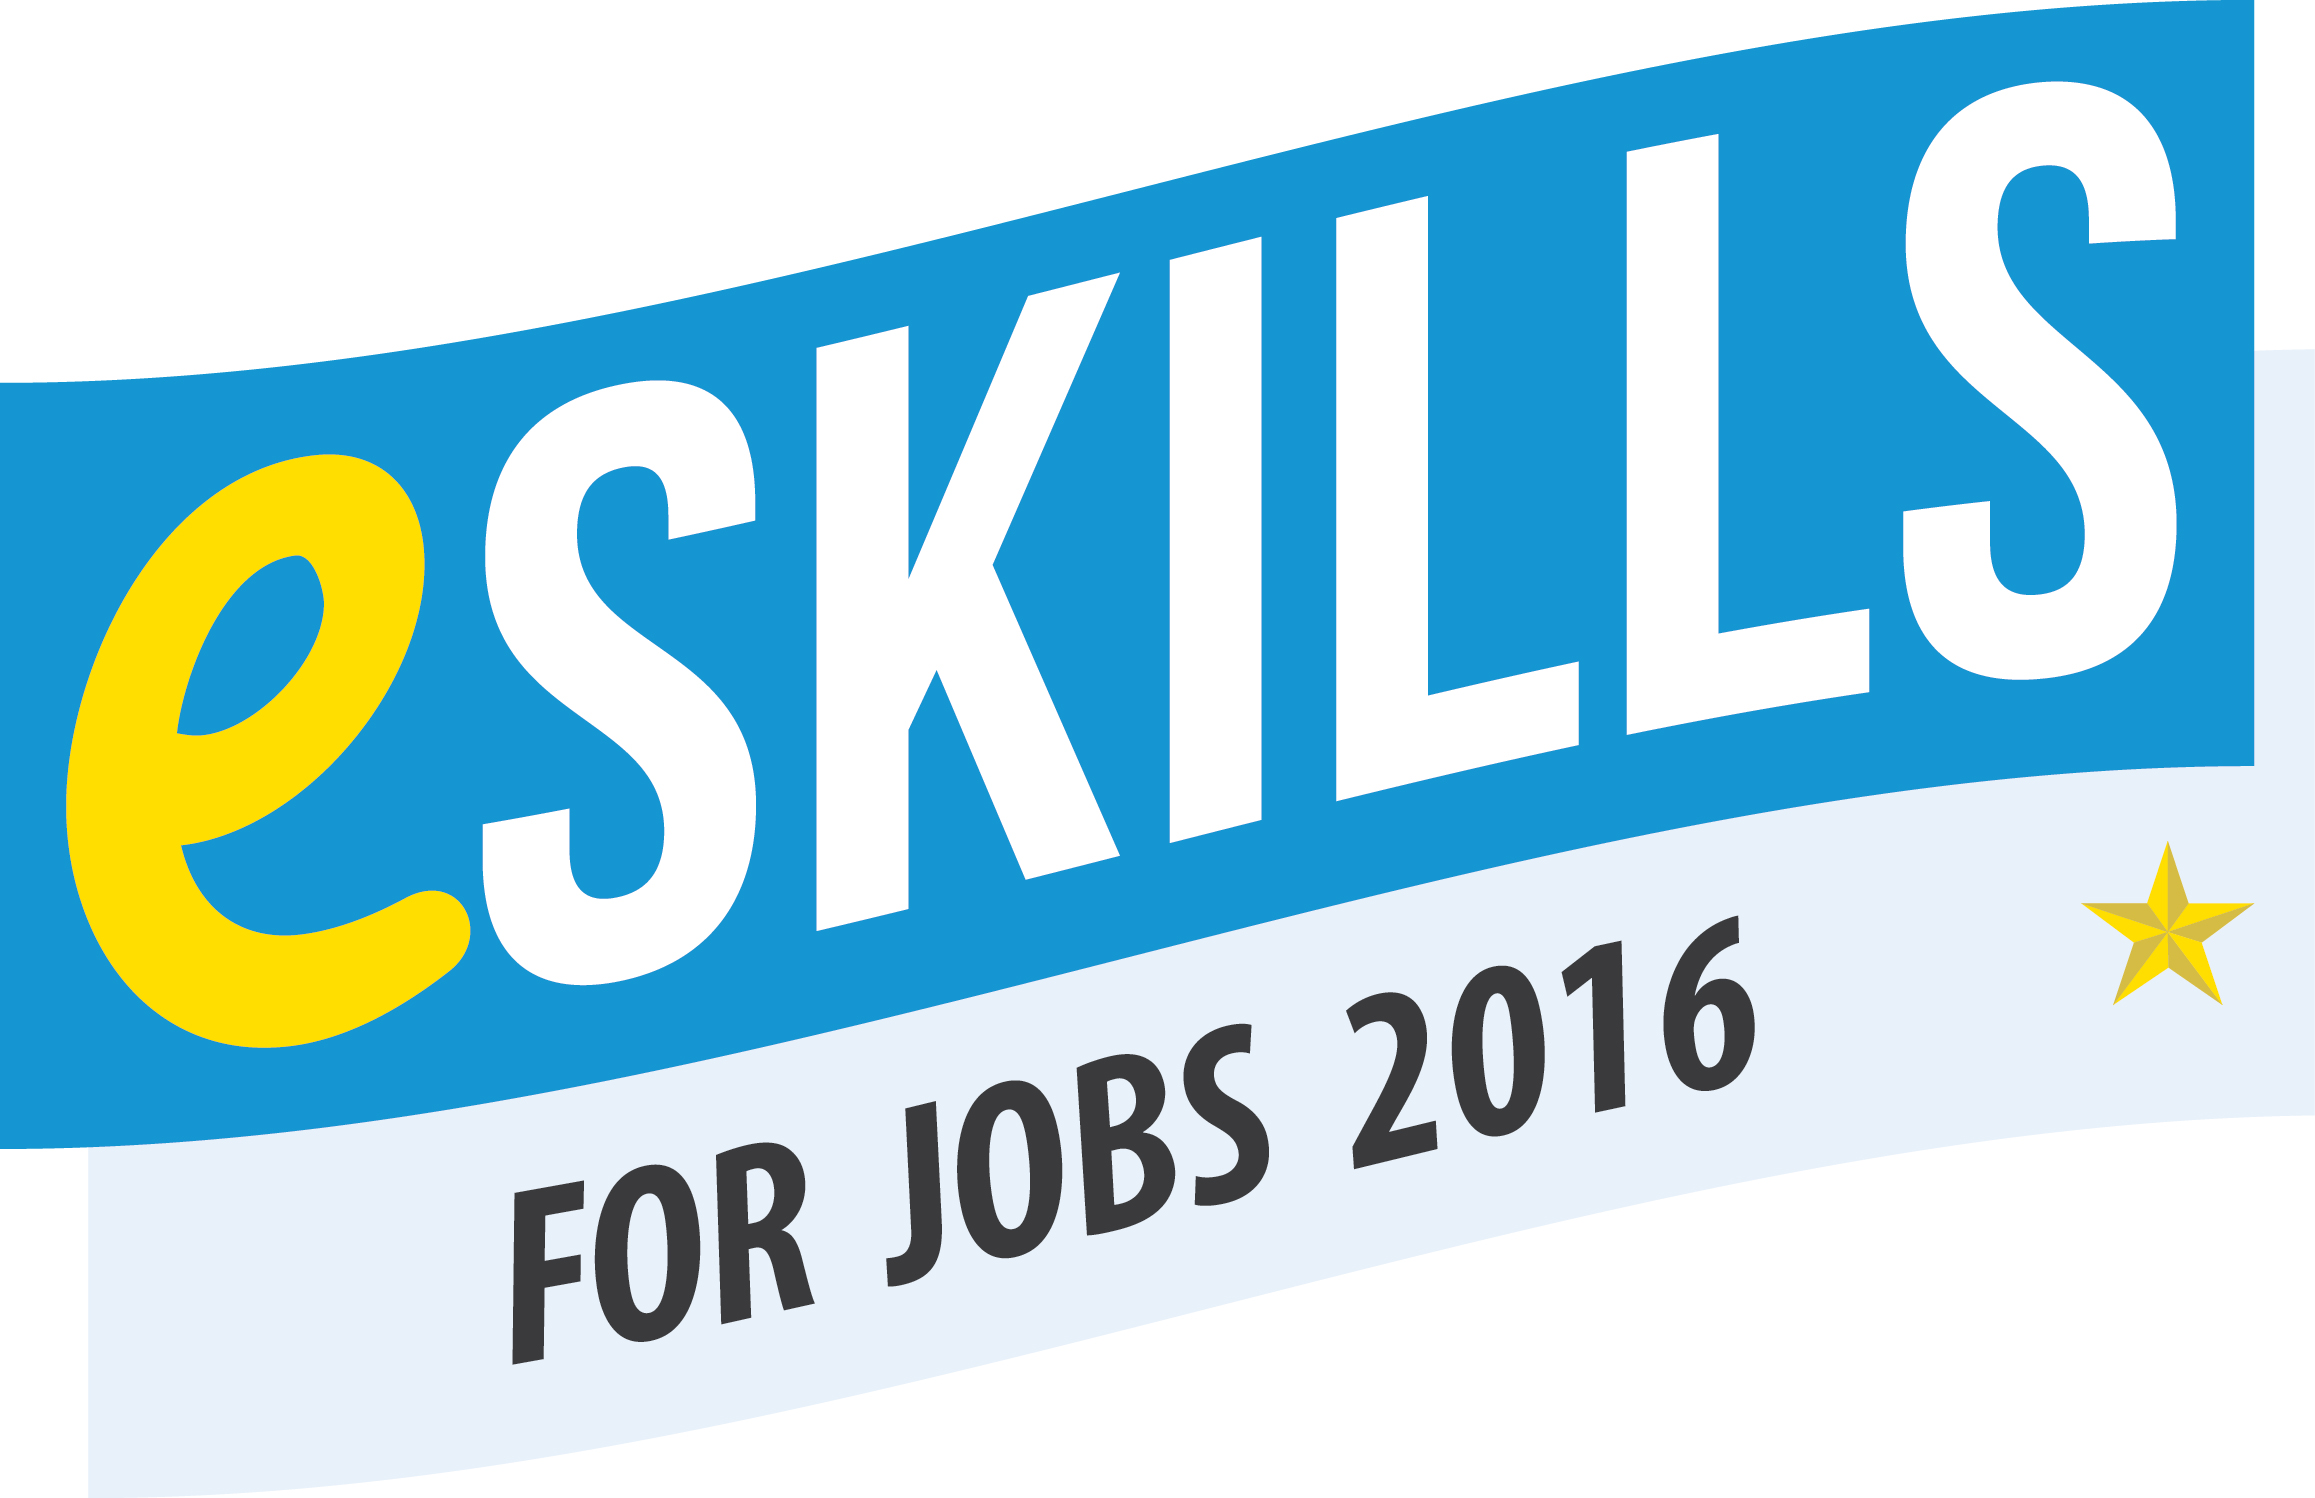 e-skills-logo